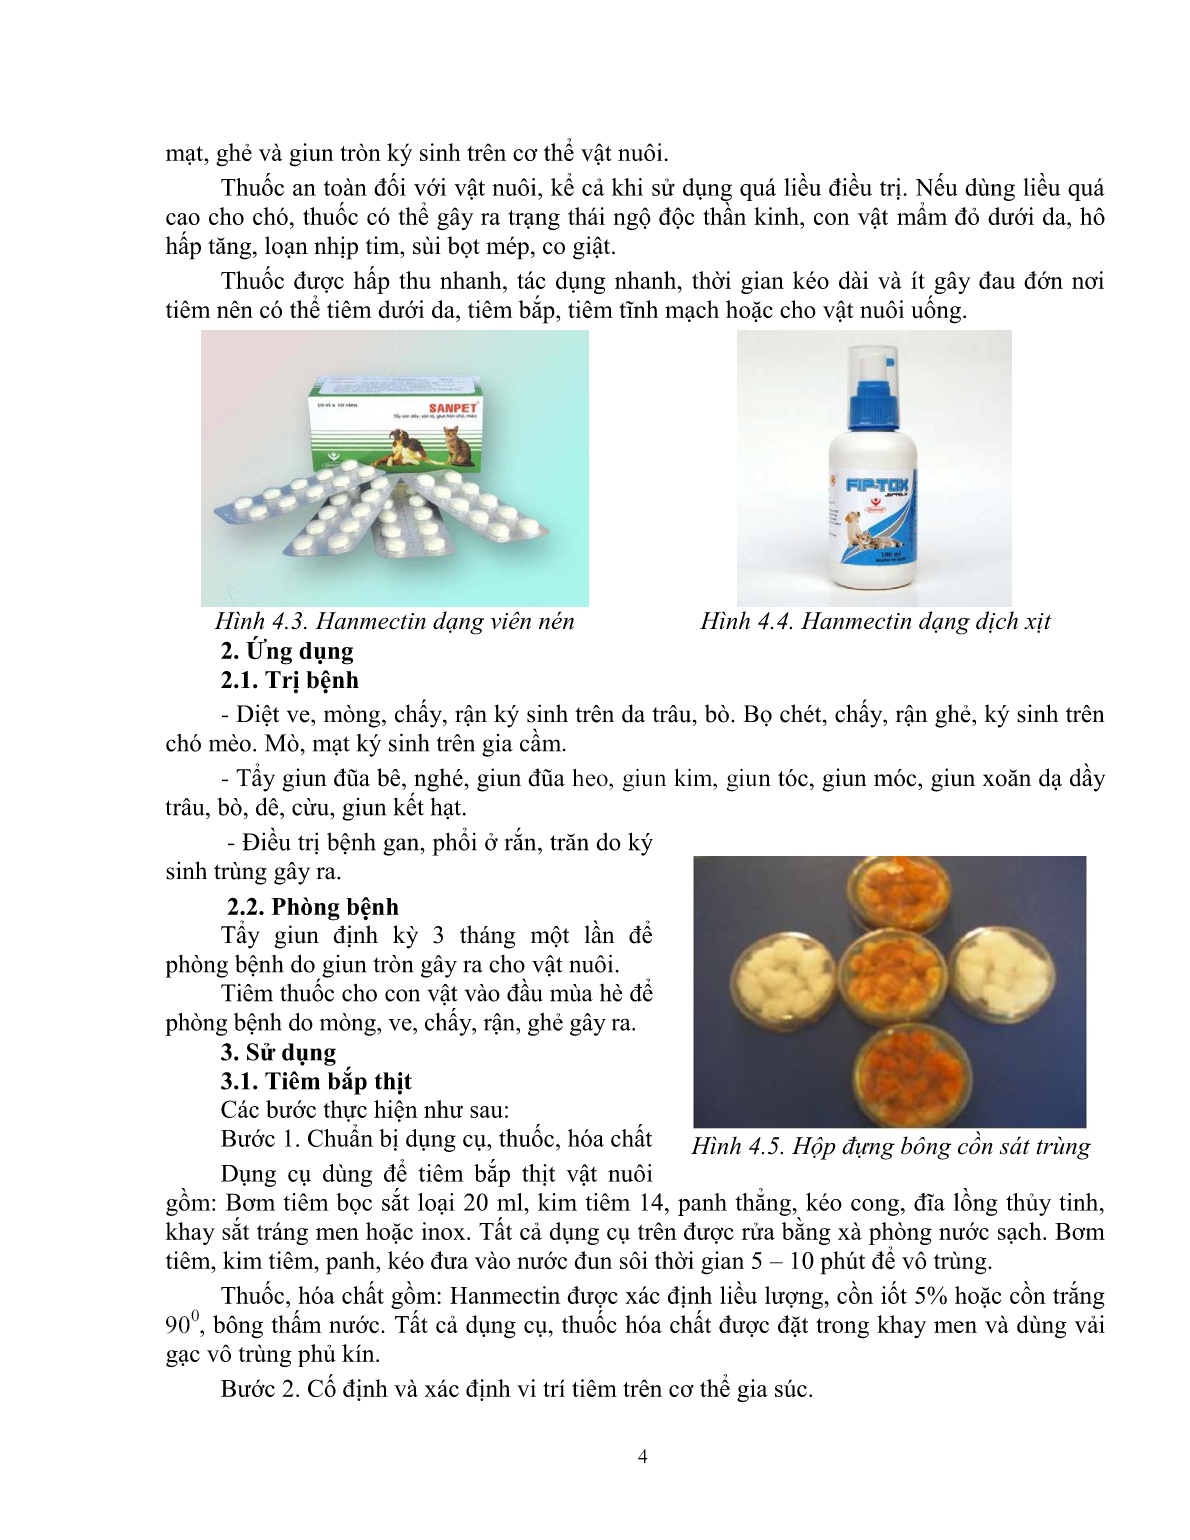 Giáo trình mô đun Xác định thuốc ký sinh trùng (Trình độ: Đào tạo dưới 3 tháng) trang 5